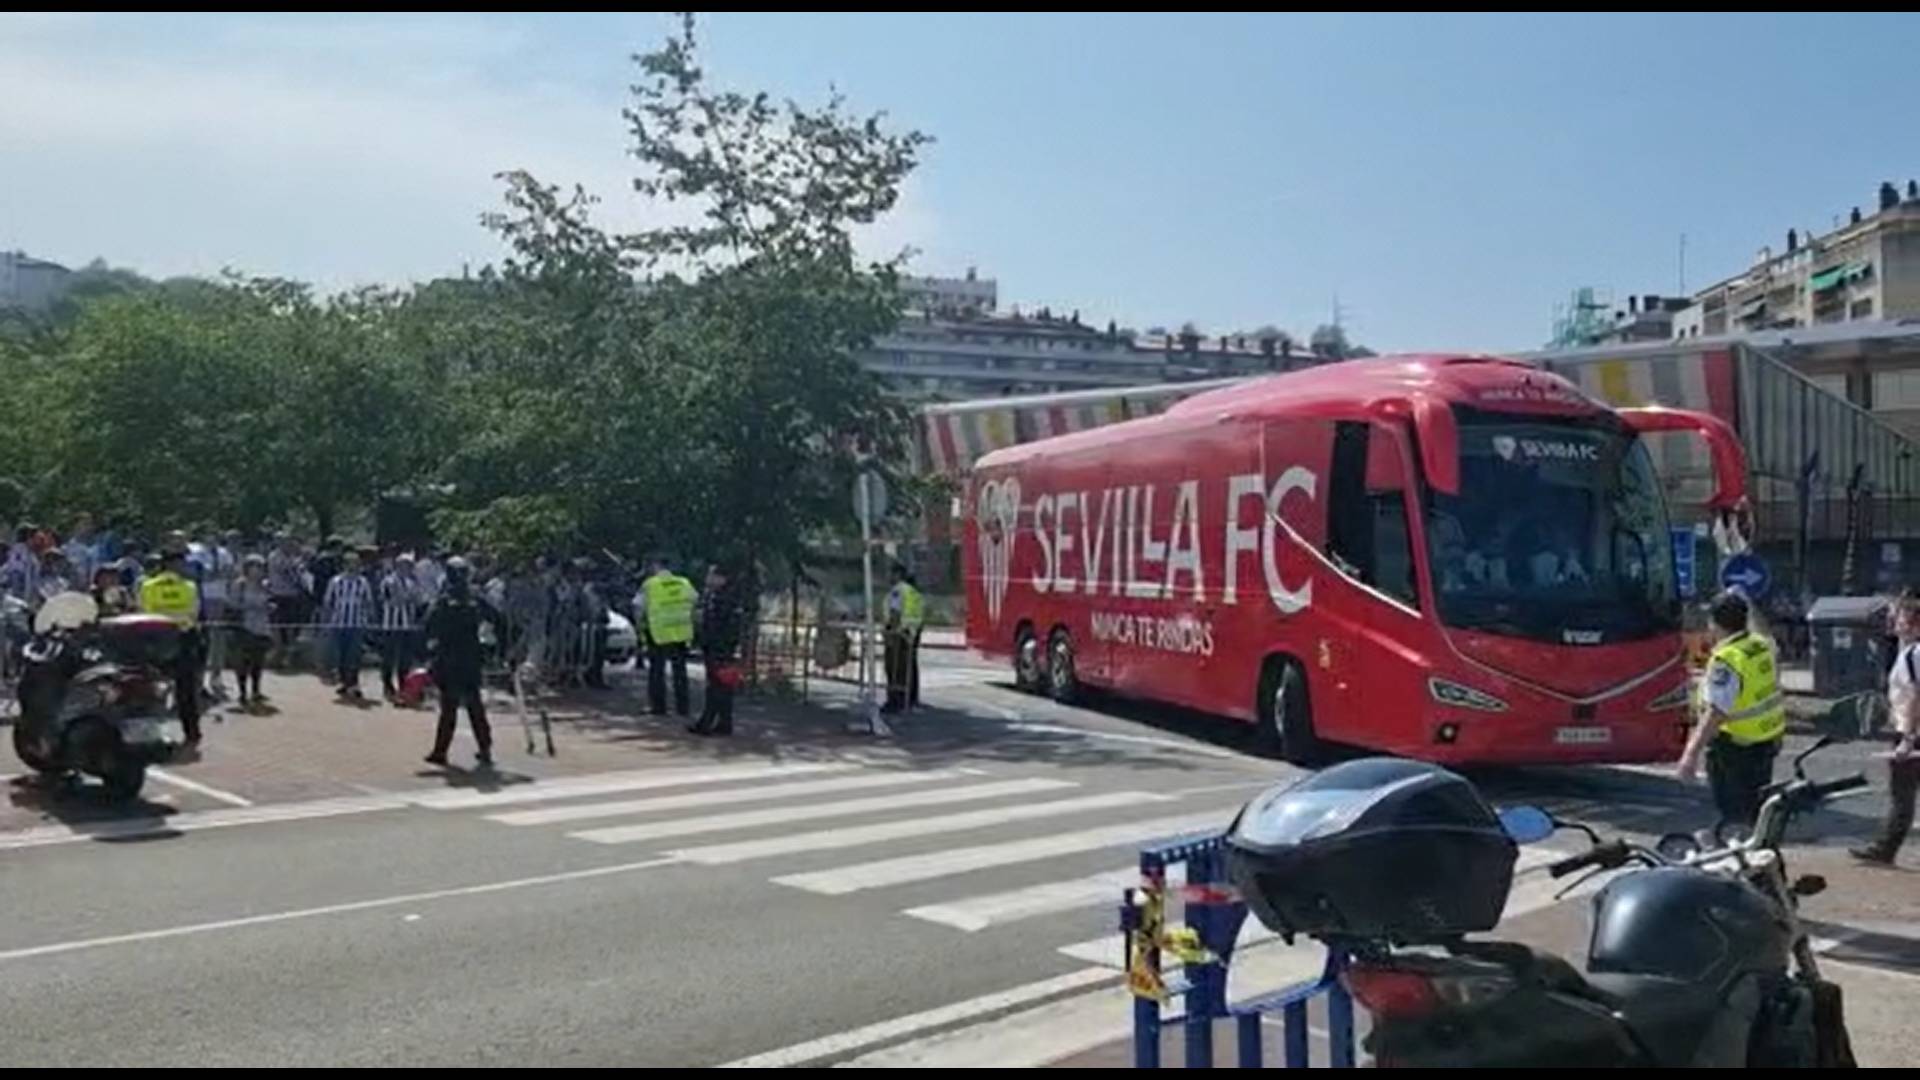 El detallazo de la afición de la Real Sociedad con el Sevilla, así recibieron al bus